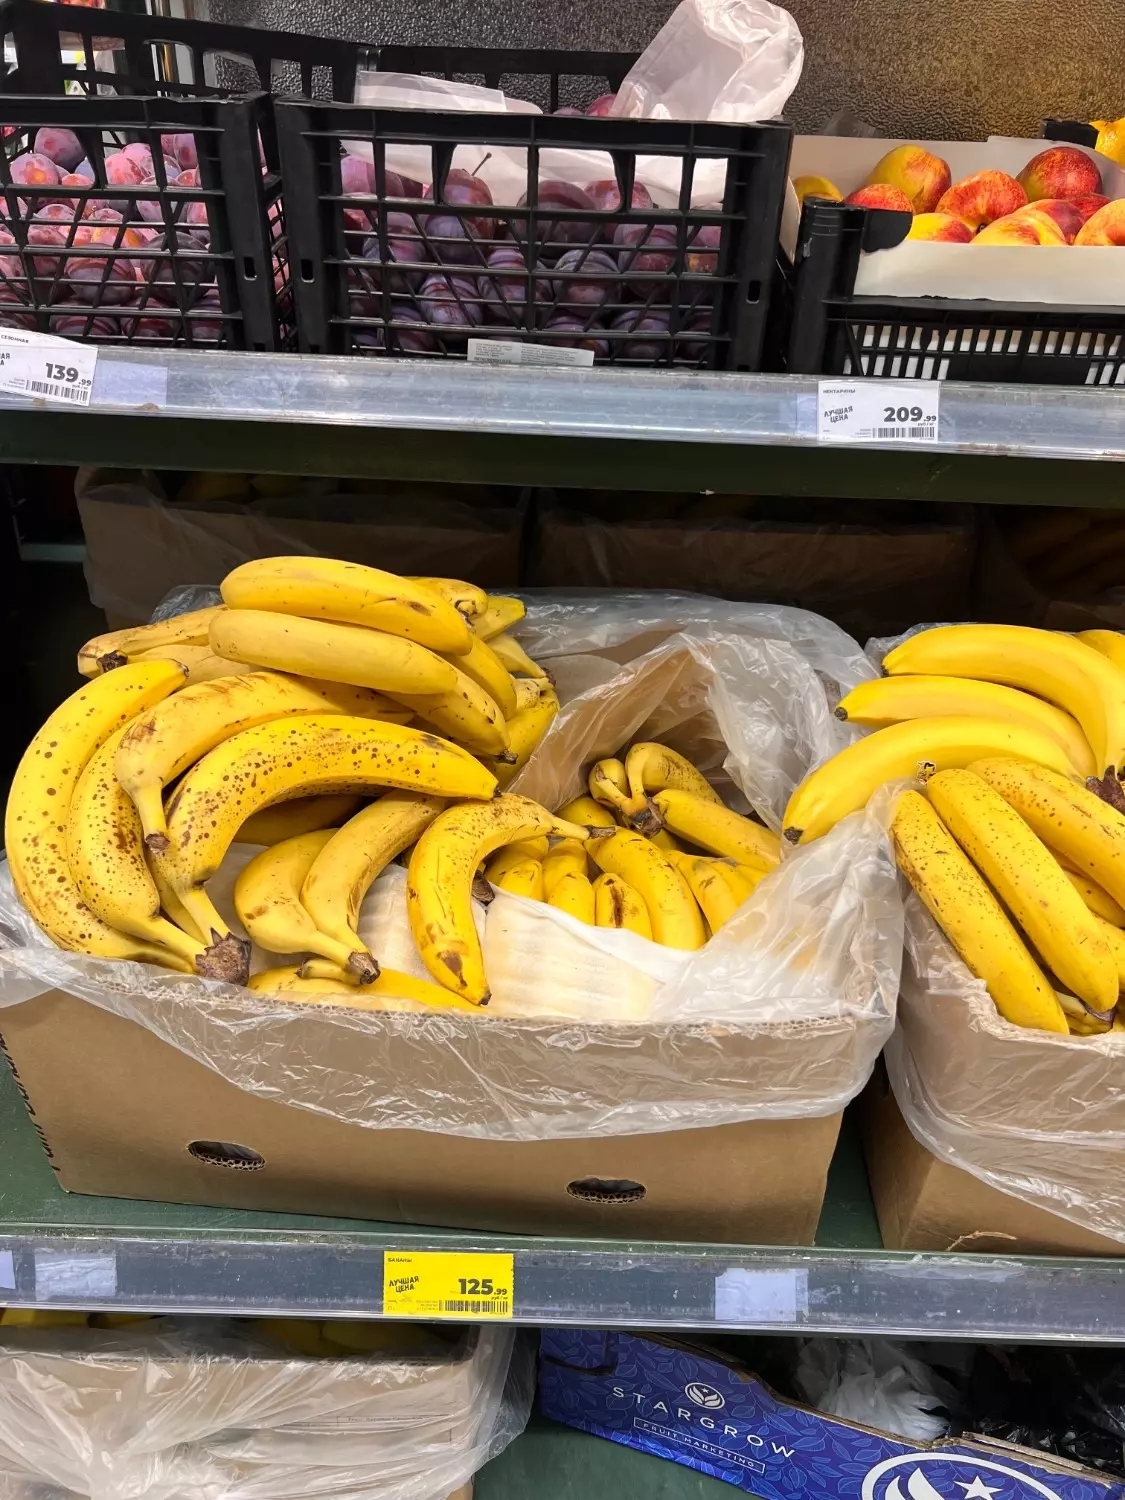 В "Магните" цена на бананы меньше, но ненамного - 125.99 рублей